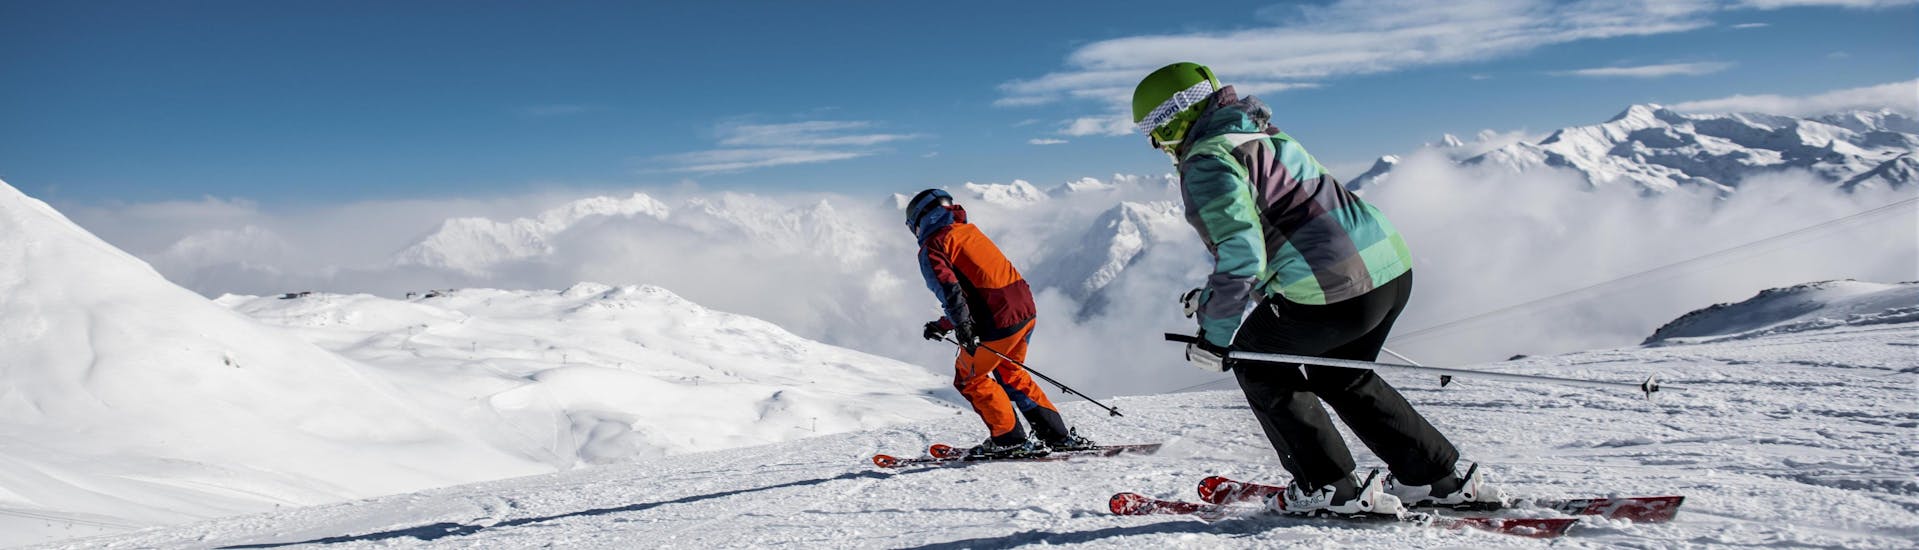 Zwei Skifahrer beim Skifahren auf einer frisch präparierten Piste in Klosters, einem beliebten schweizer Skigebiet in dem viele bei einer der örtlichen Skischulen einen Skikurs buchen.